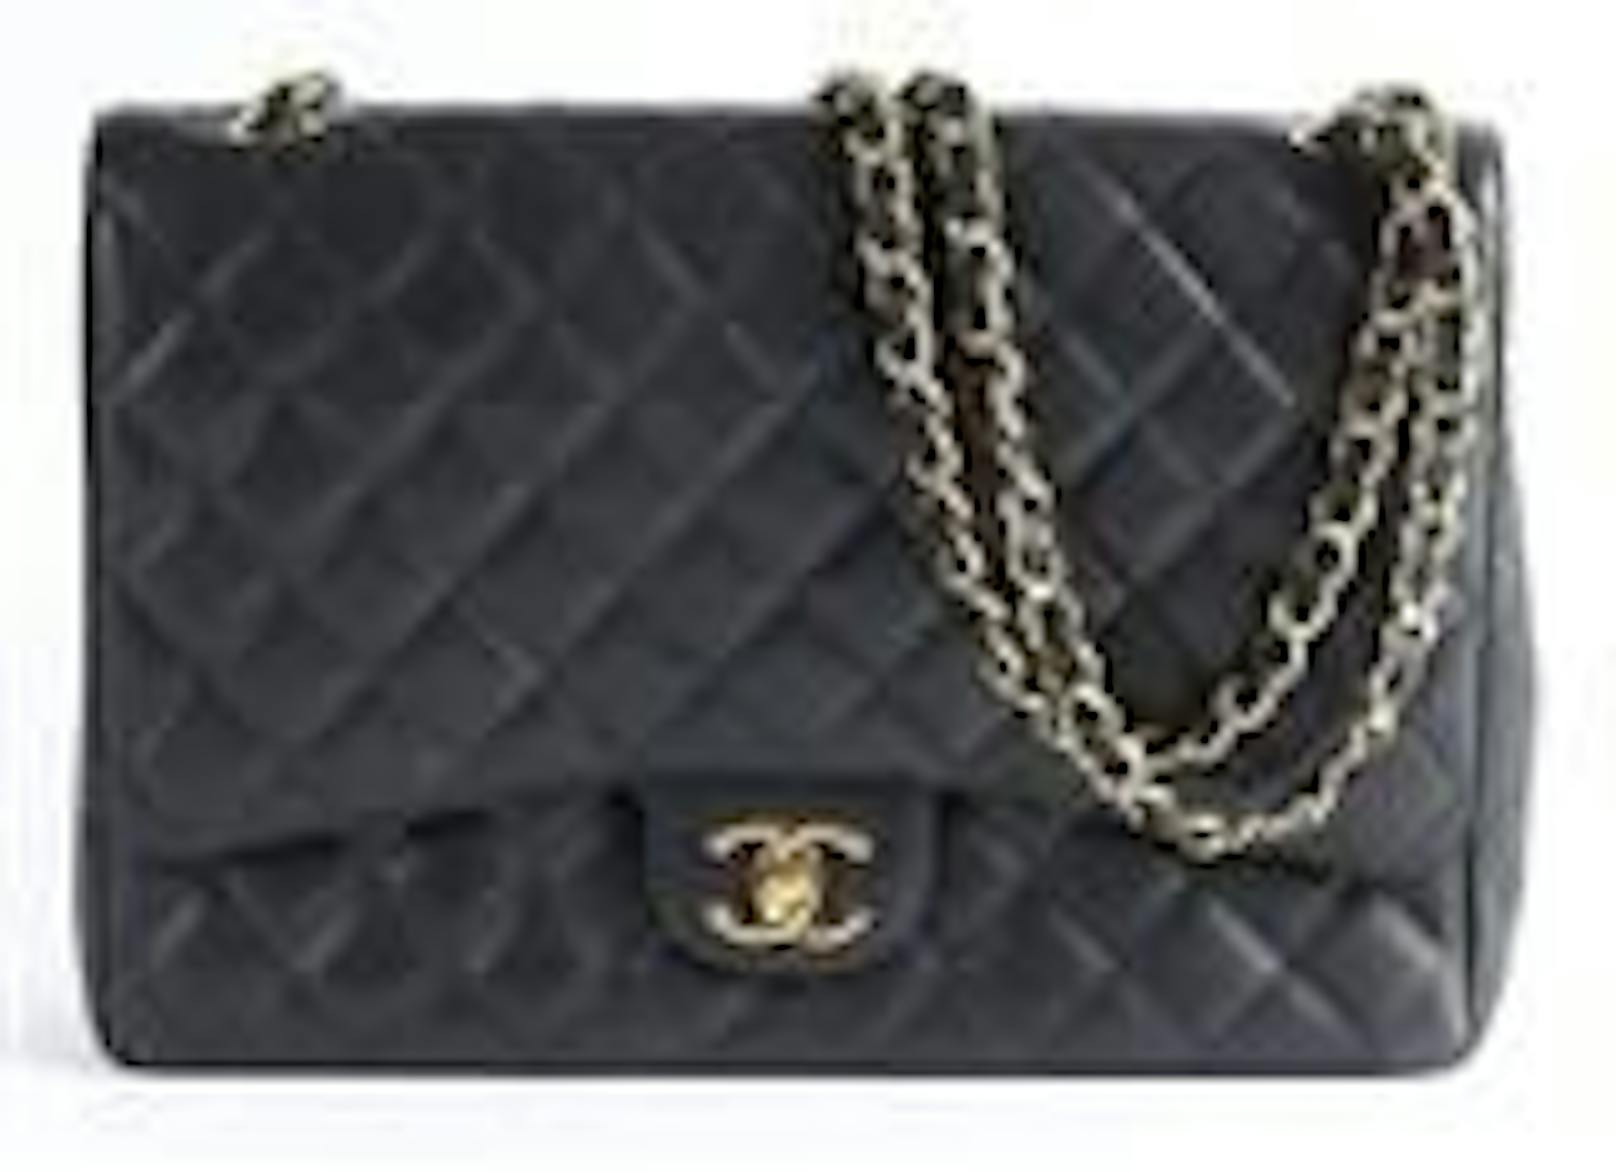 Chanel-Tasche um 4.500 Euro